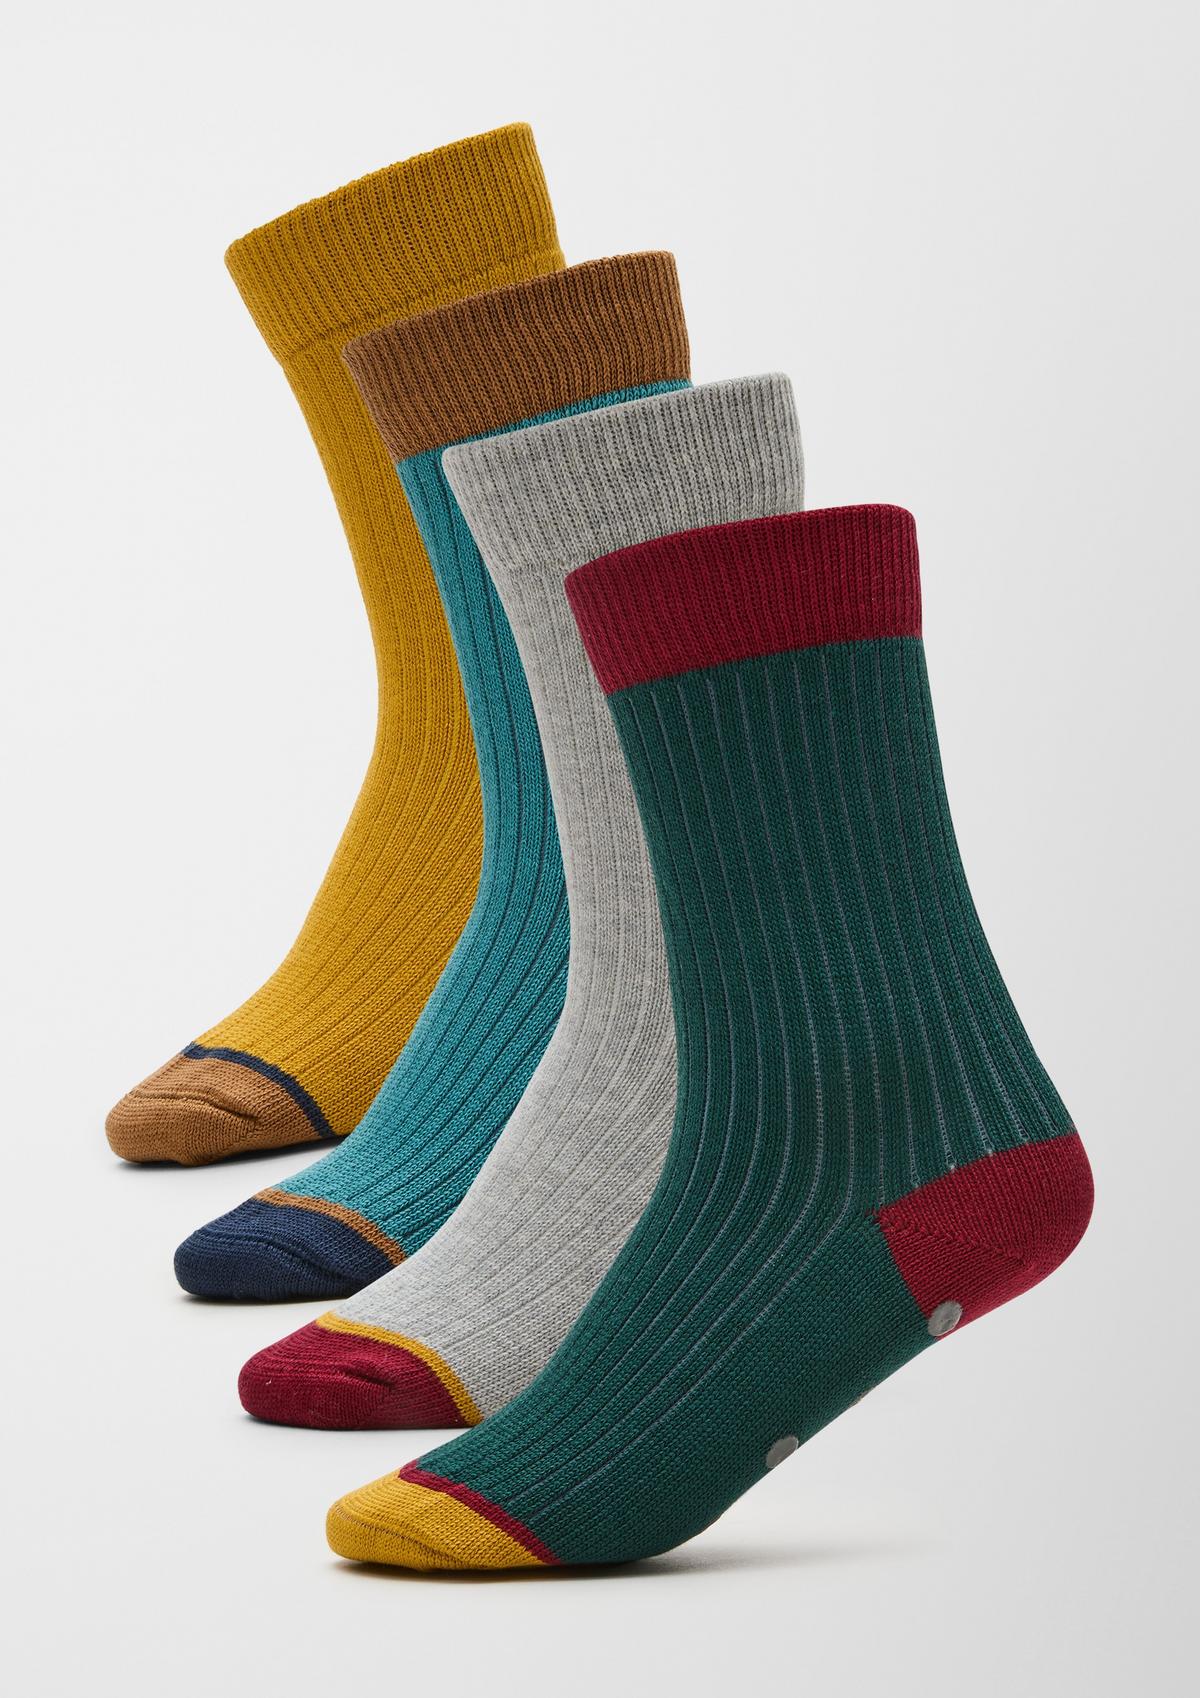 Jungen: Socken für Teens kaufen online